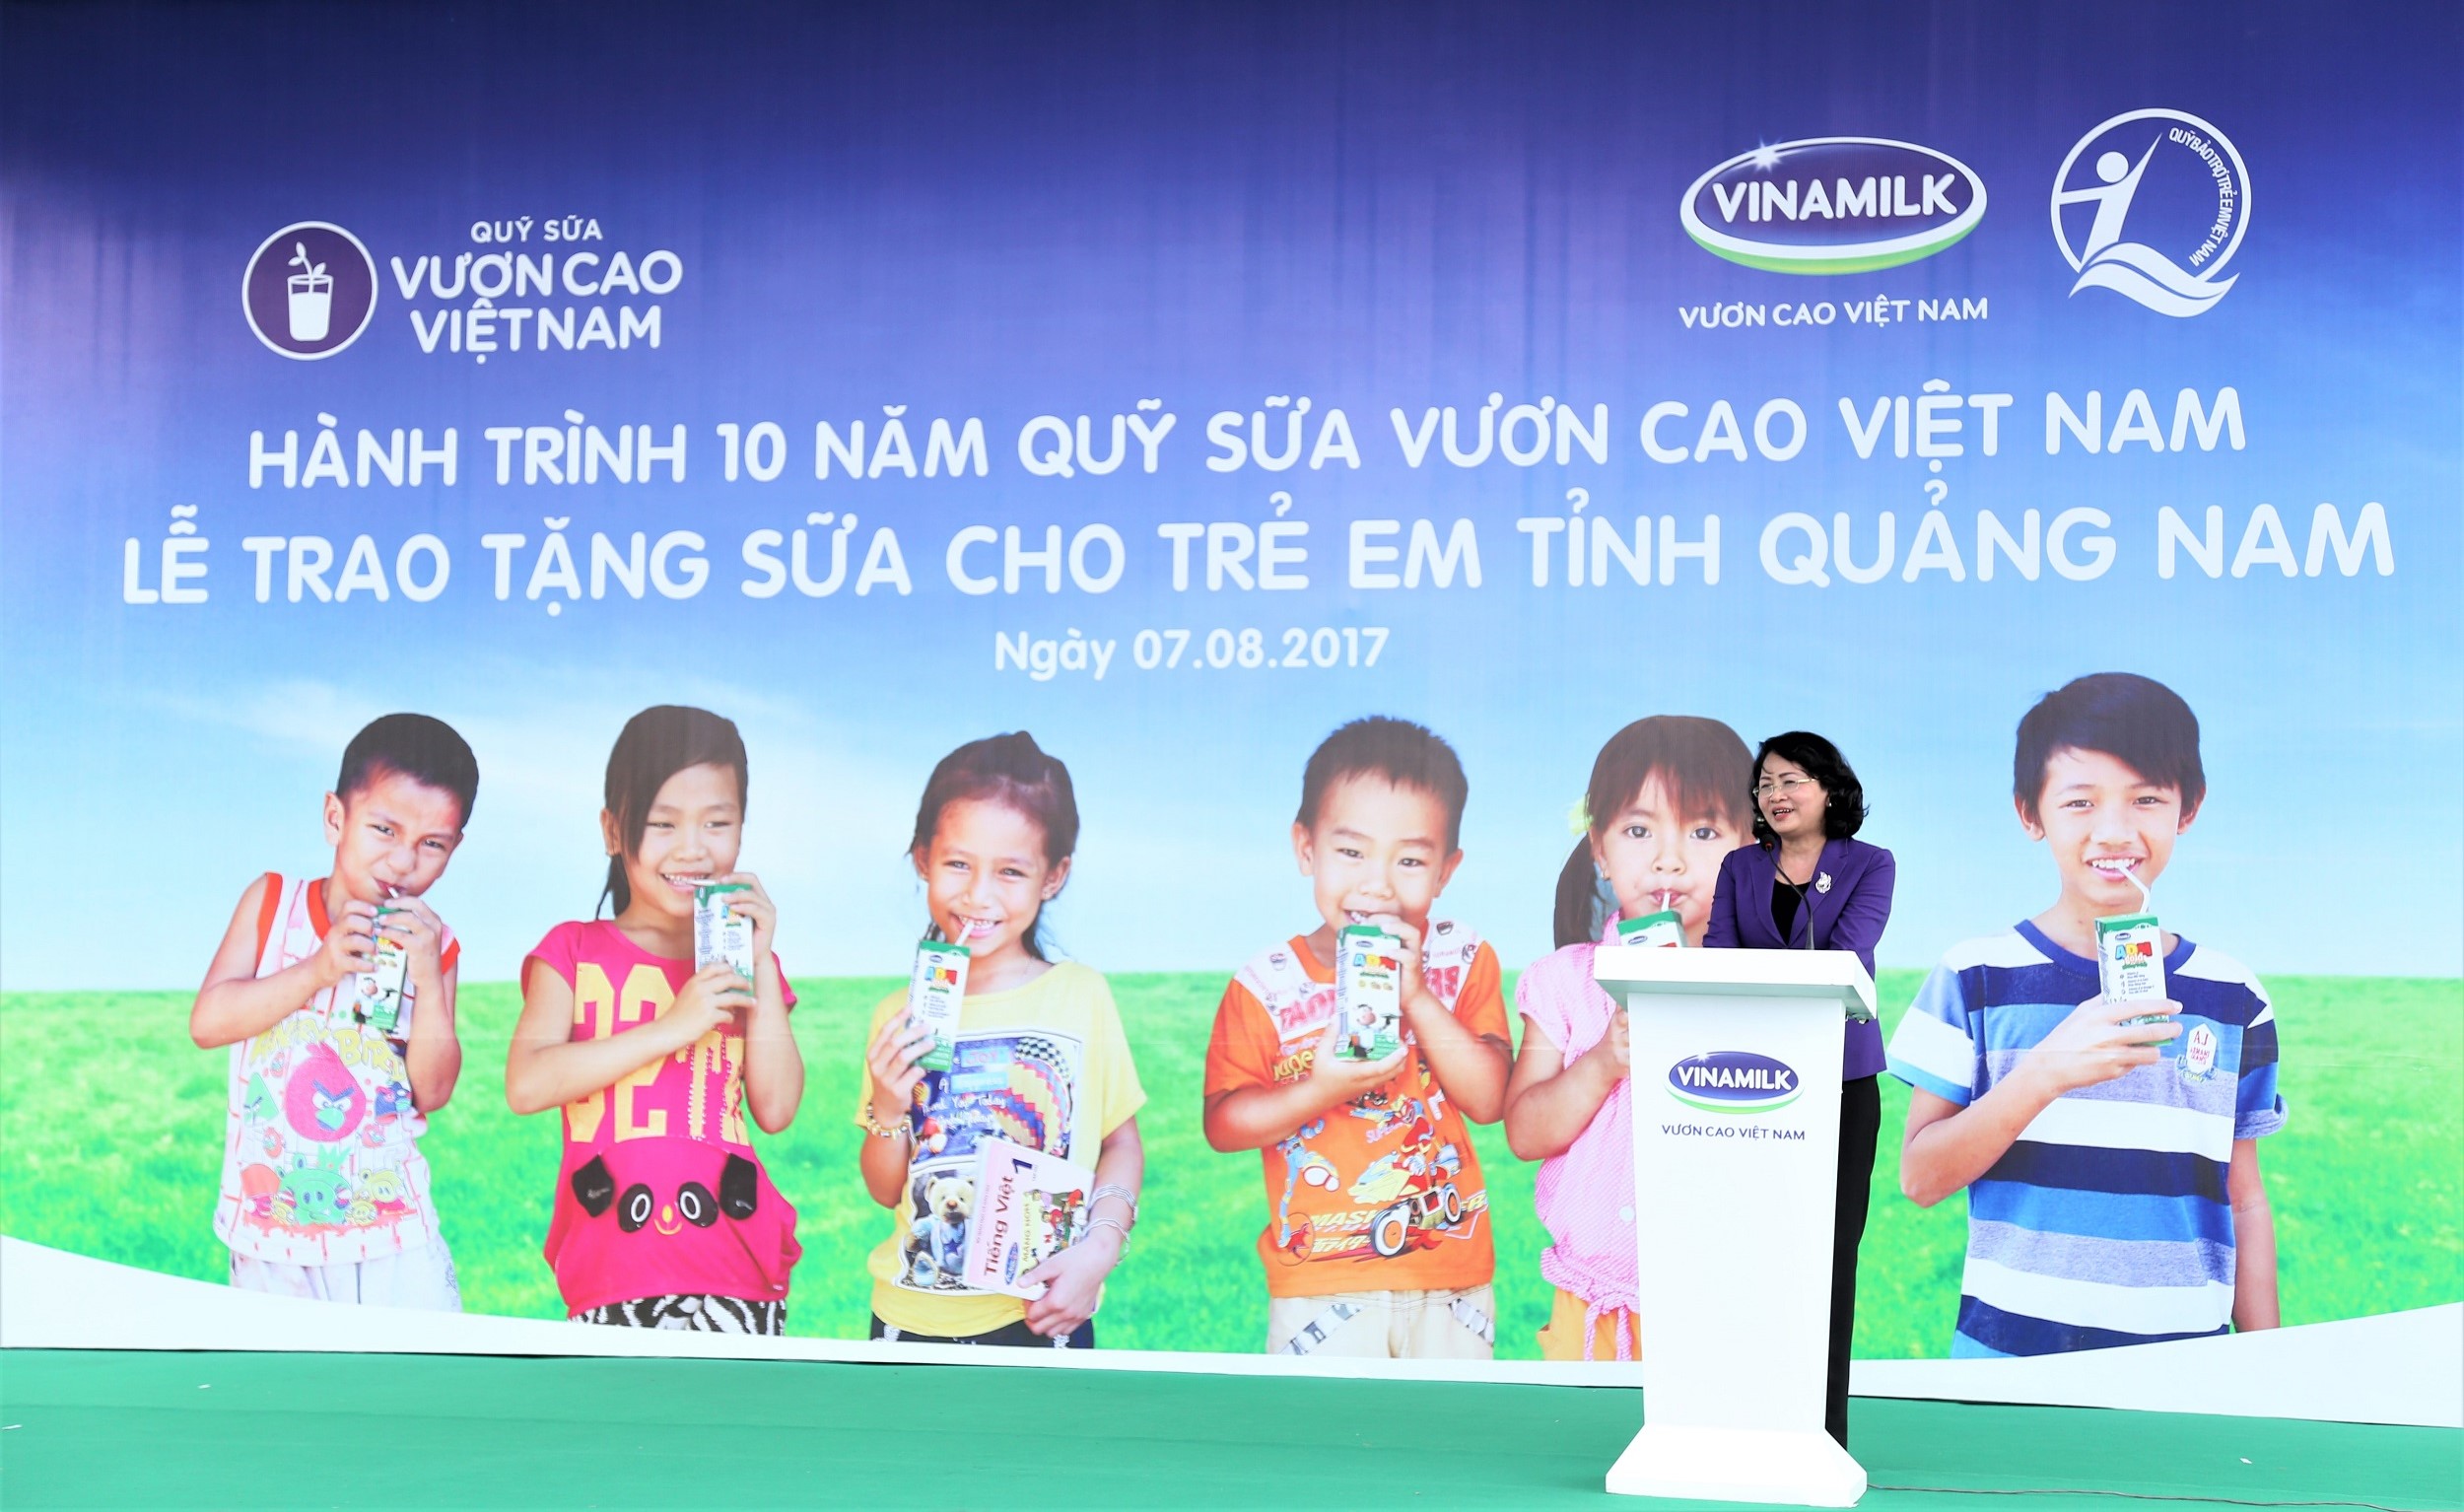 Bà Đặng Thị Ngọc Thịnh - Ủy viên Ban Chấp hành Trung ương Đảng, Phó Chủ tịch nước Cộng hòa Xã hội Chủ nghĩa Việt Nam phát biểu tại buổi lễ Trao sữa